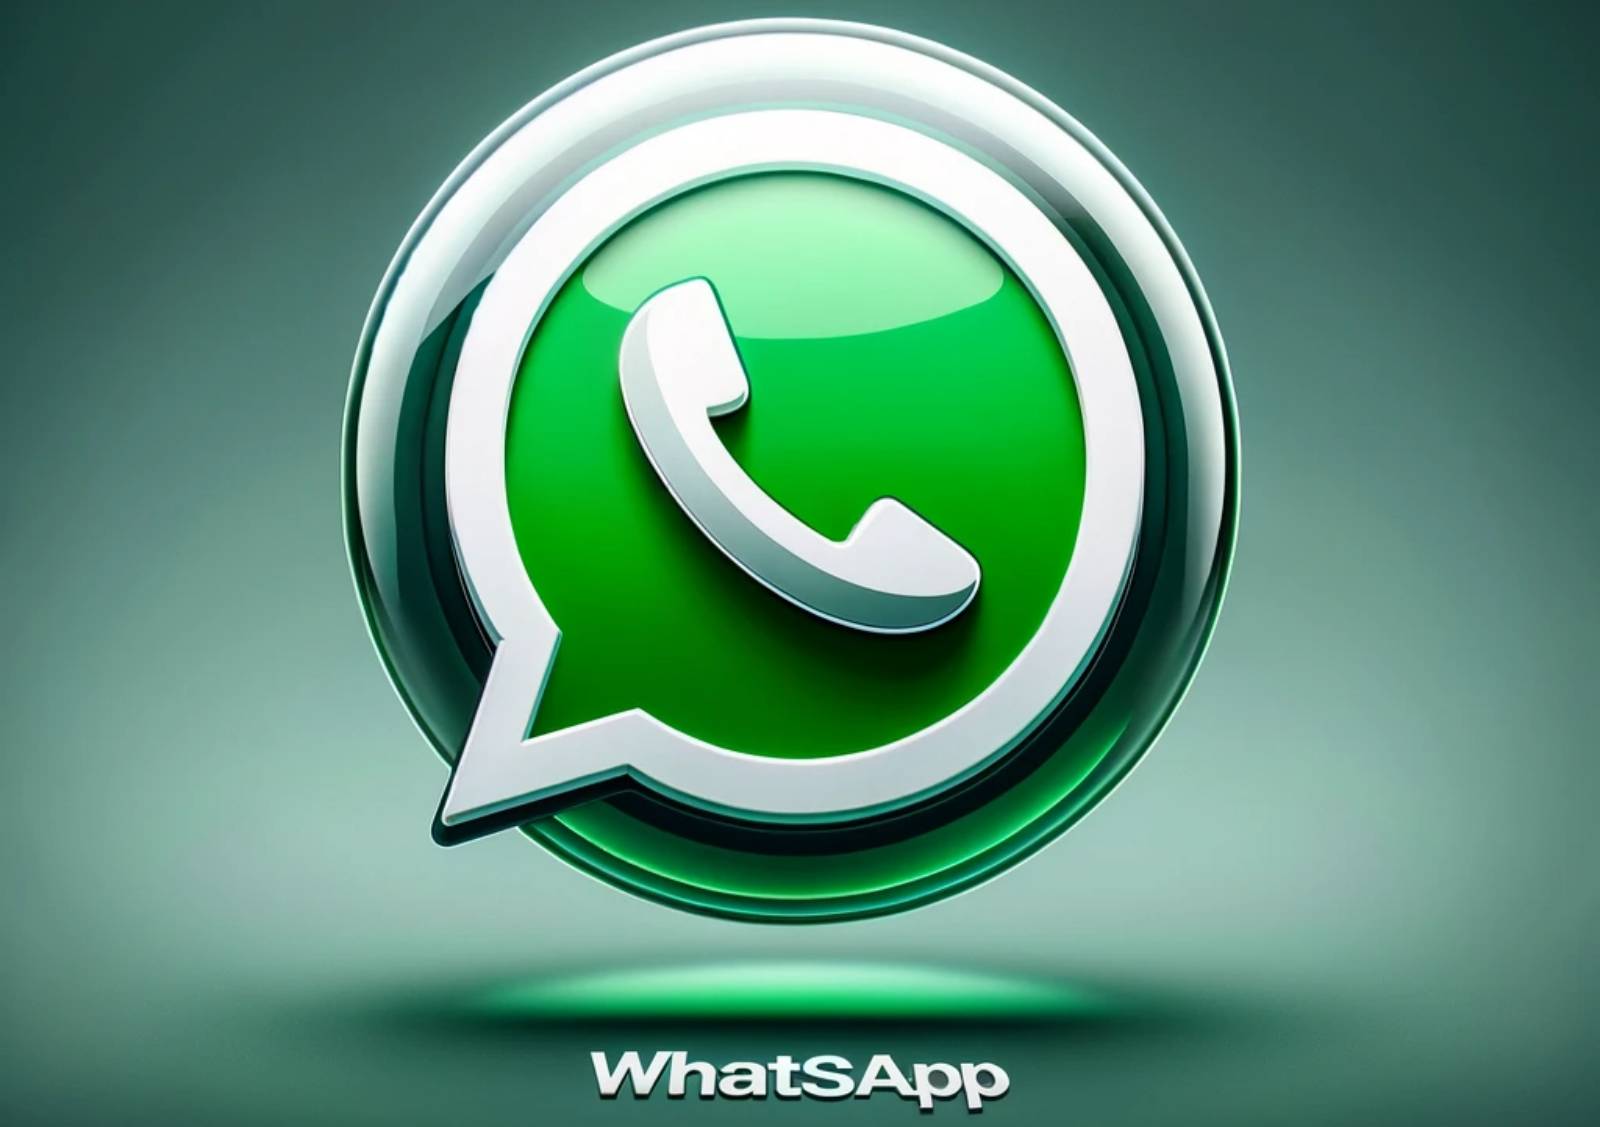 WhatsApp-Positionierung